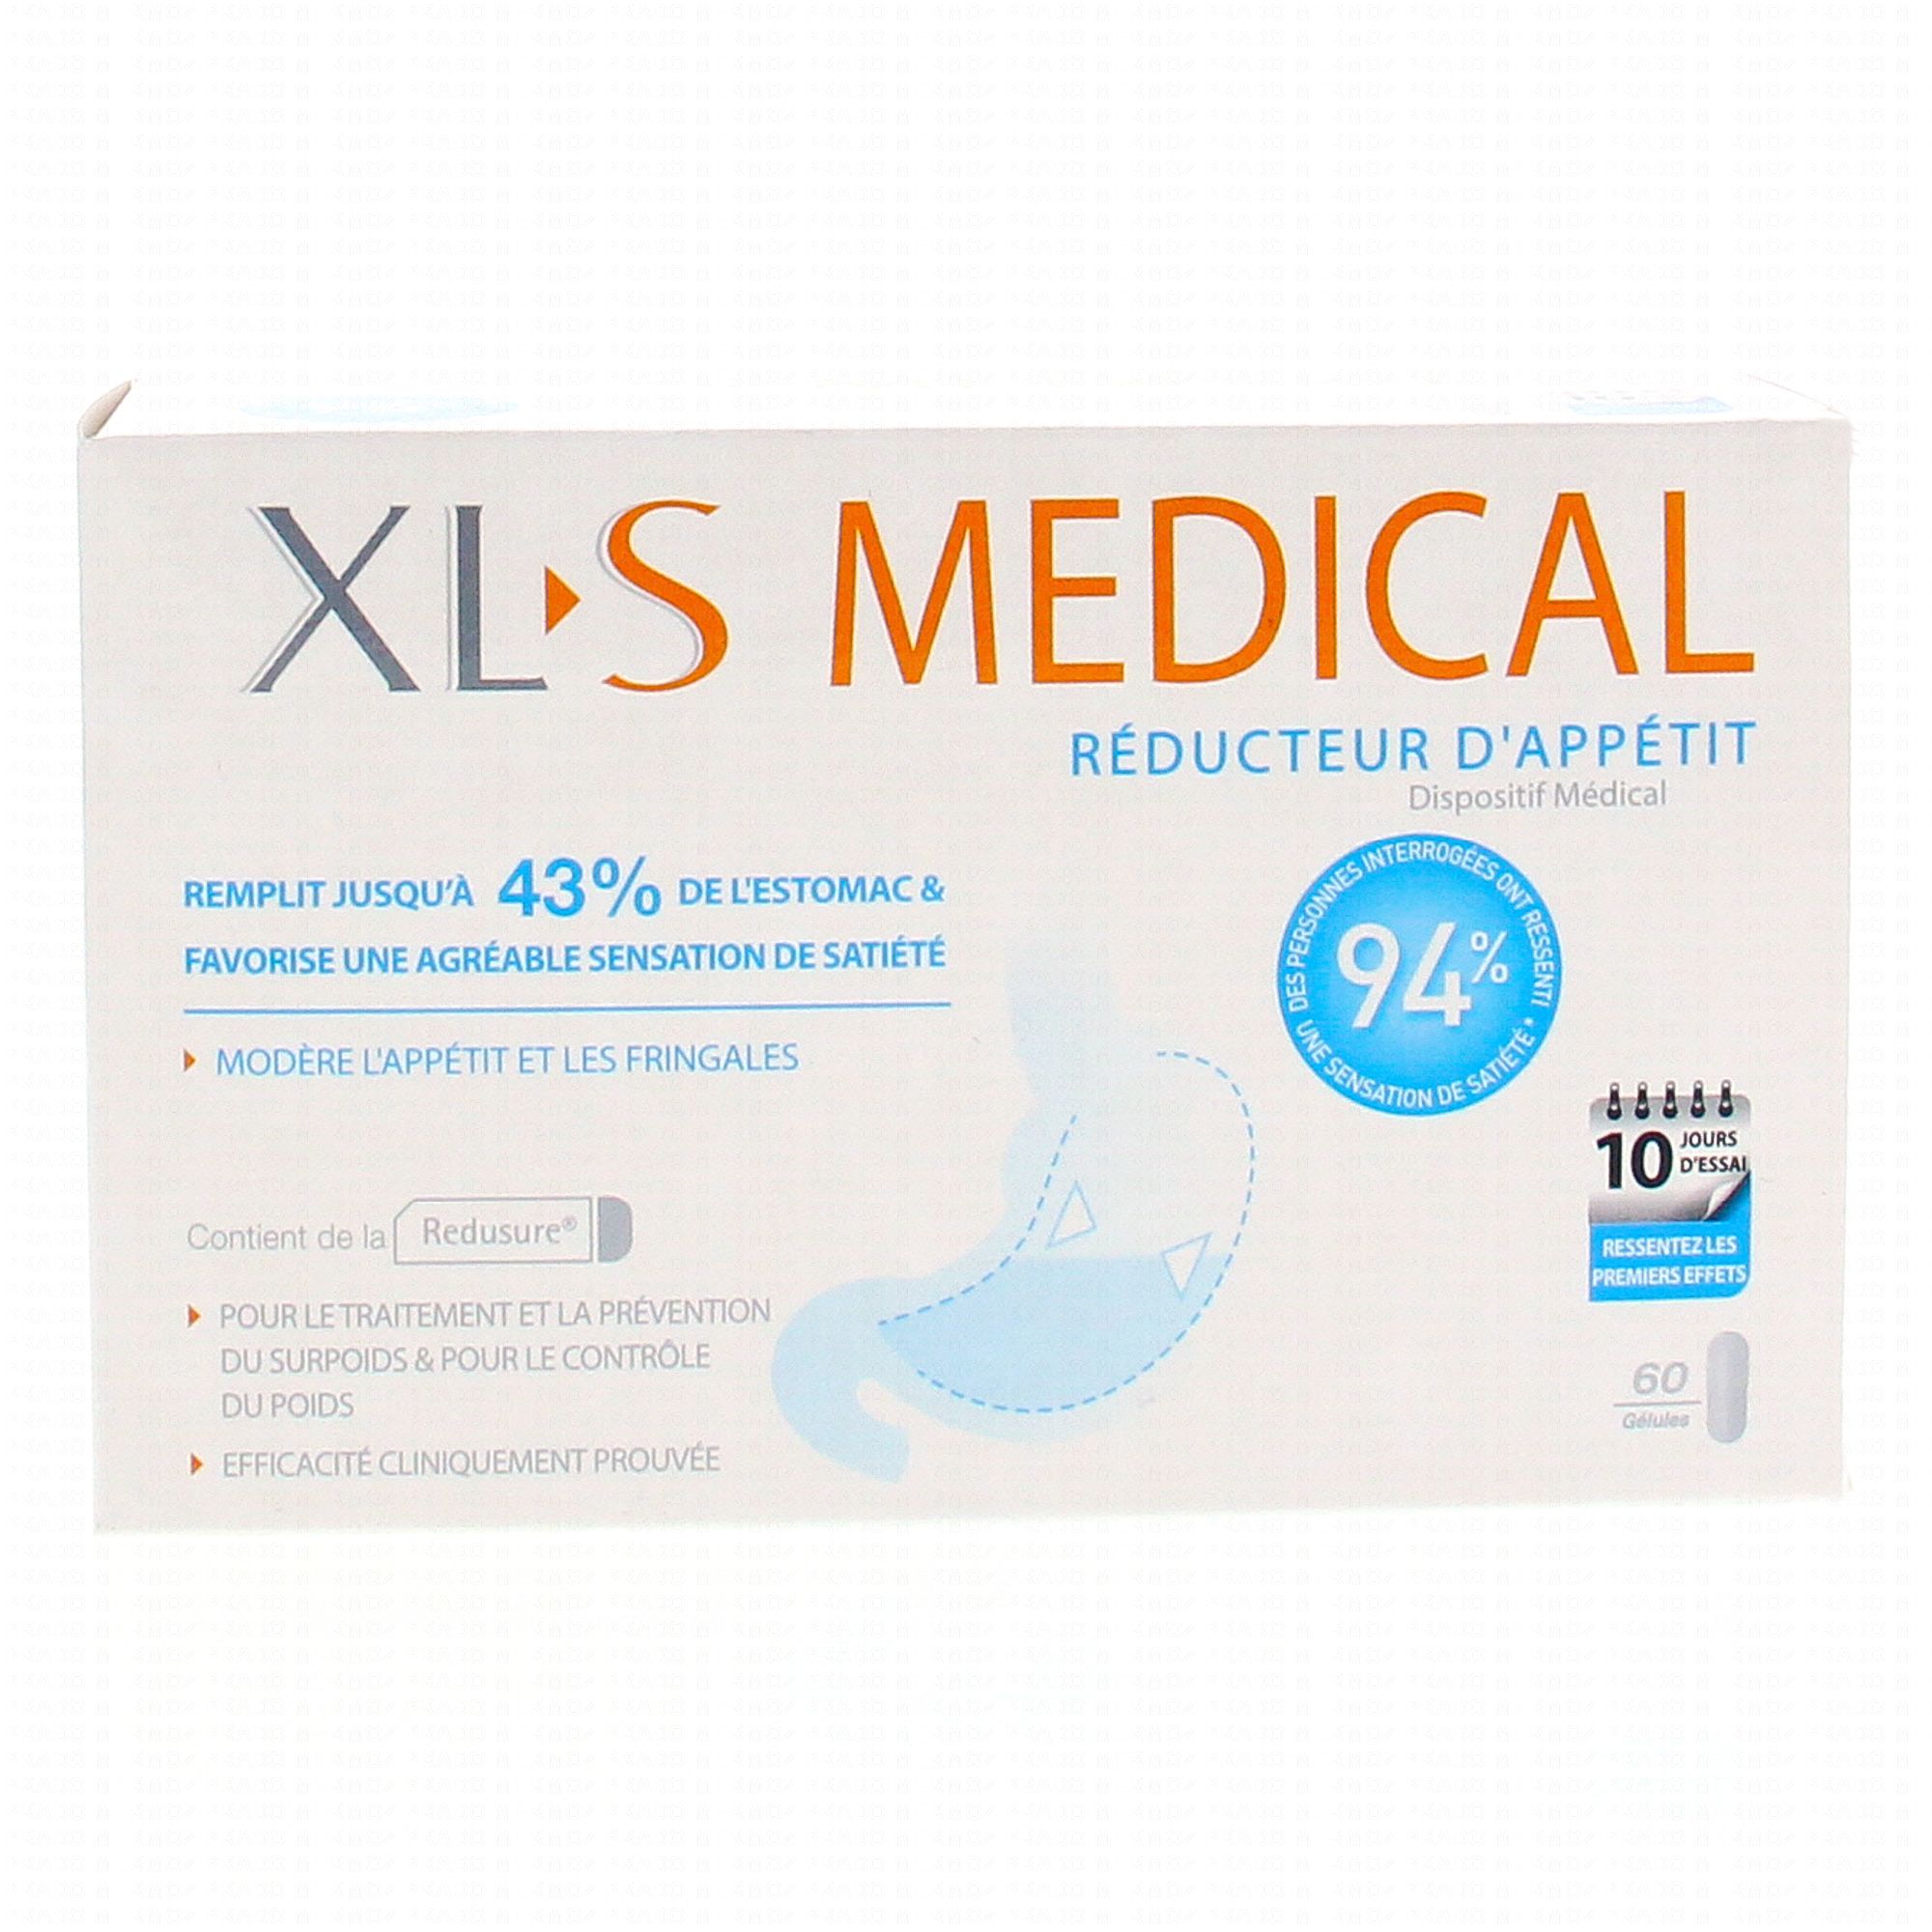 XLS Medical avis : que vaut ce complément contre le surpoids ?